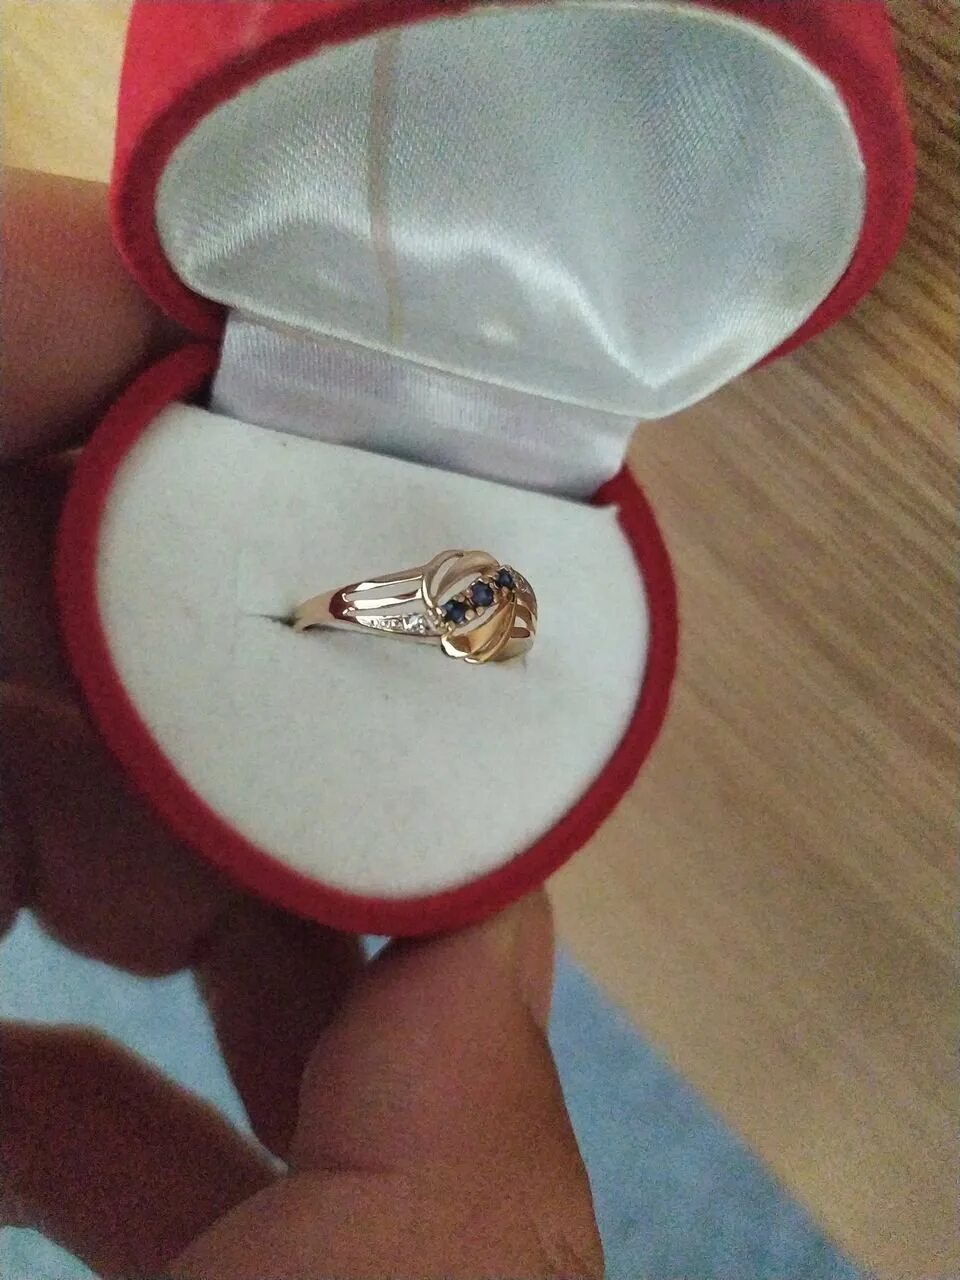 Кольцо подарок. Красивая коробочка для кольца. Кольцо в коробочке. Золотое кольцо в коробочке. Золотое кольцо подарок